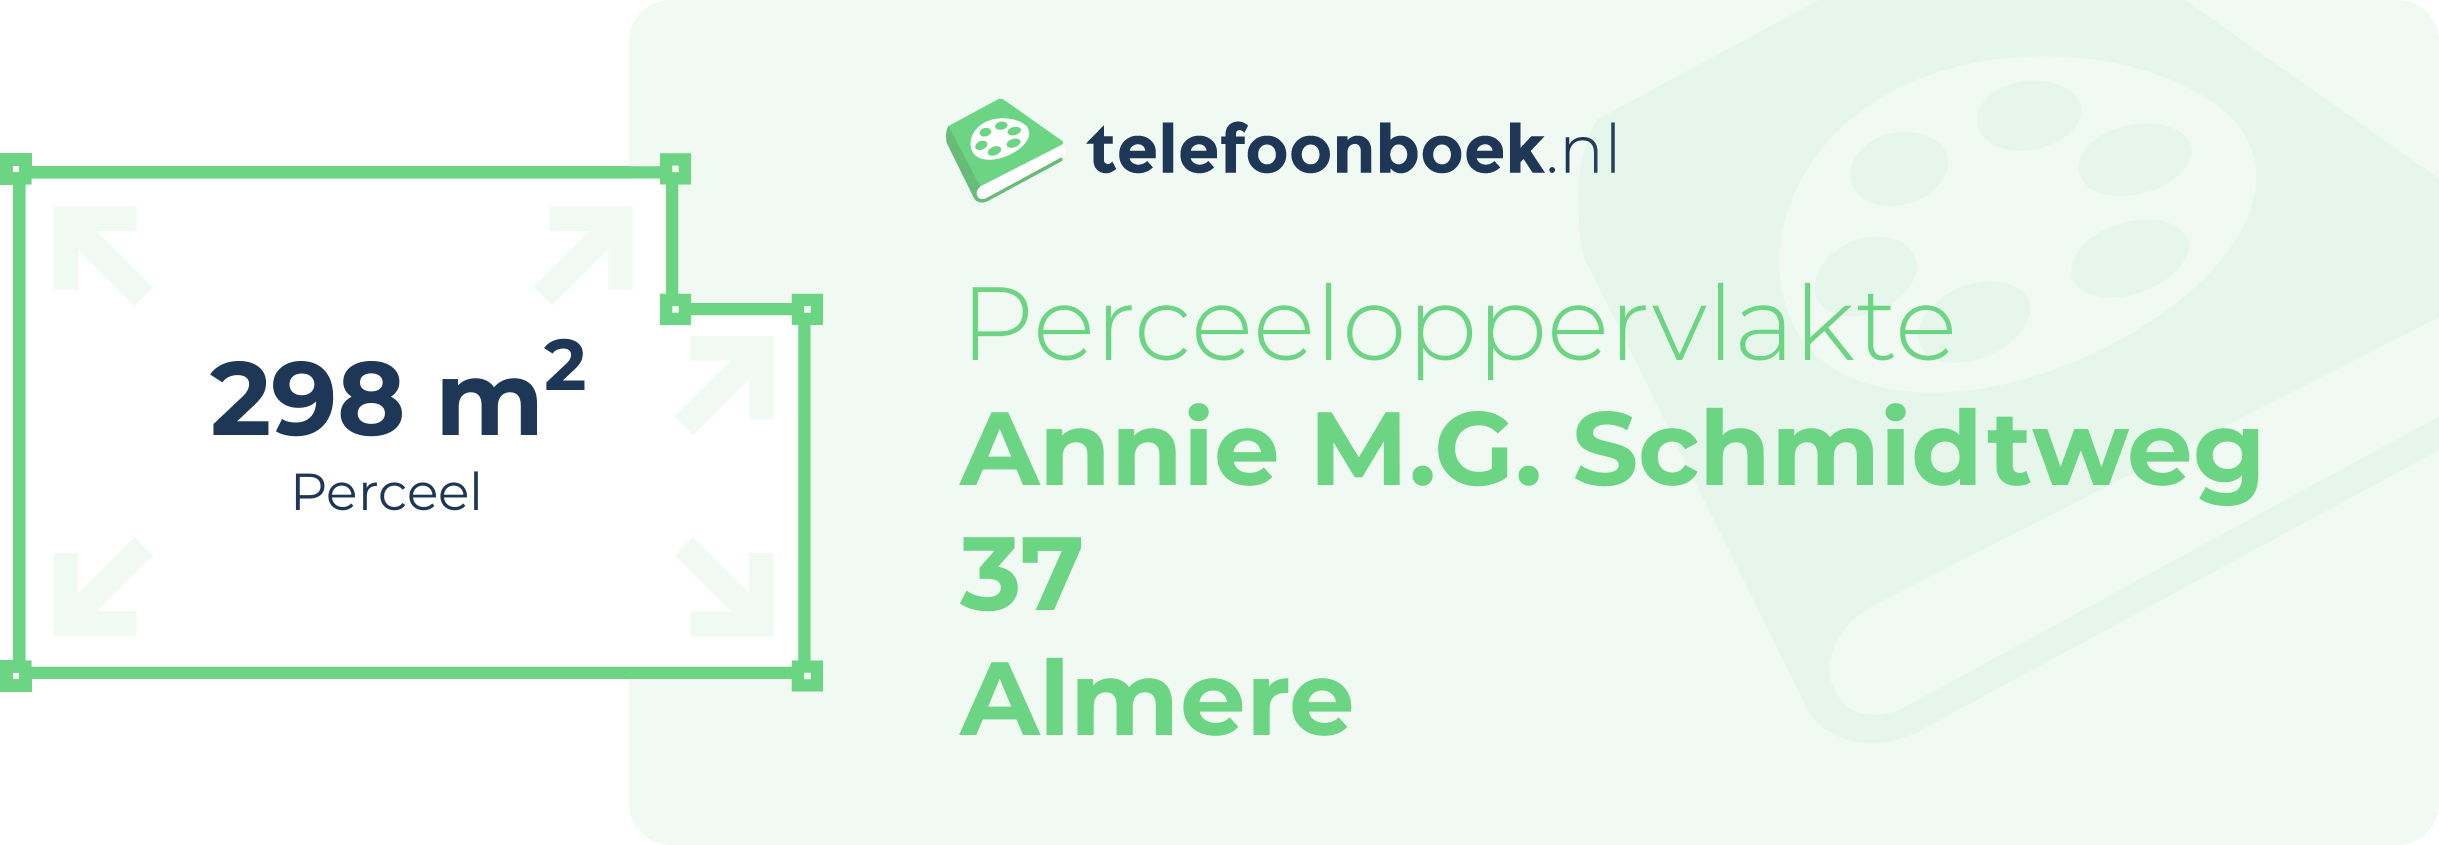 Perceeloppervlakte Annie M.G. Schmidtweg 37 Almere